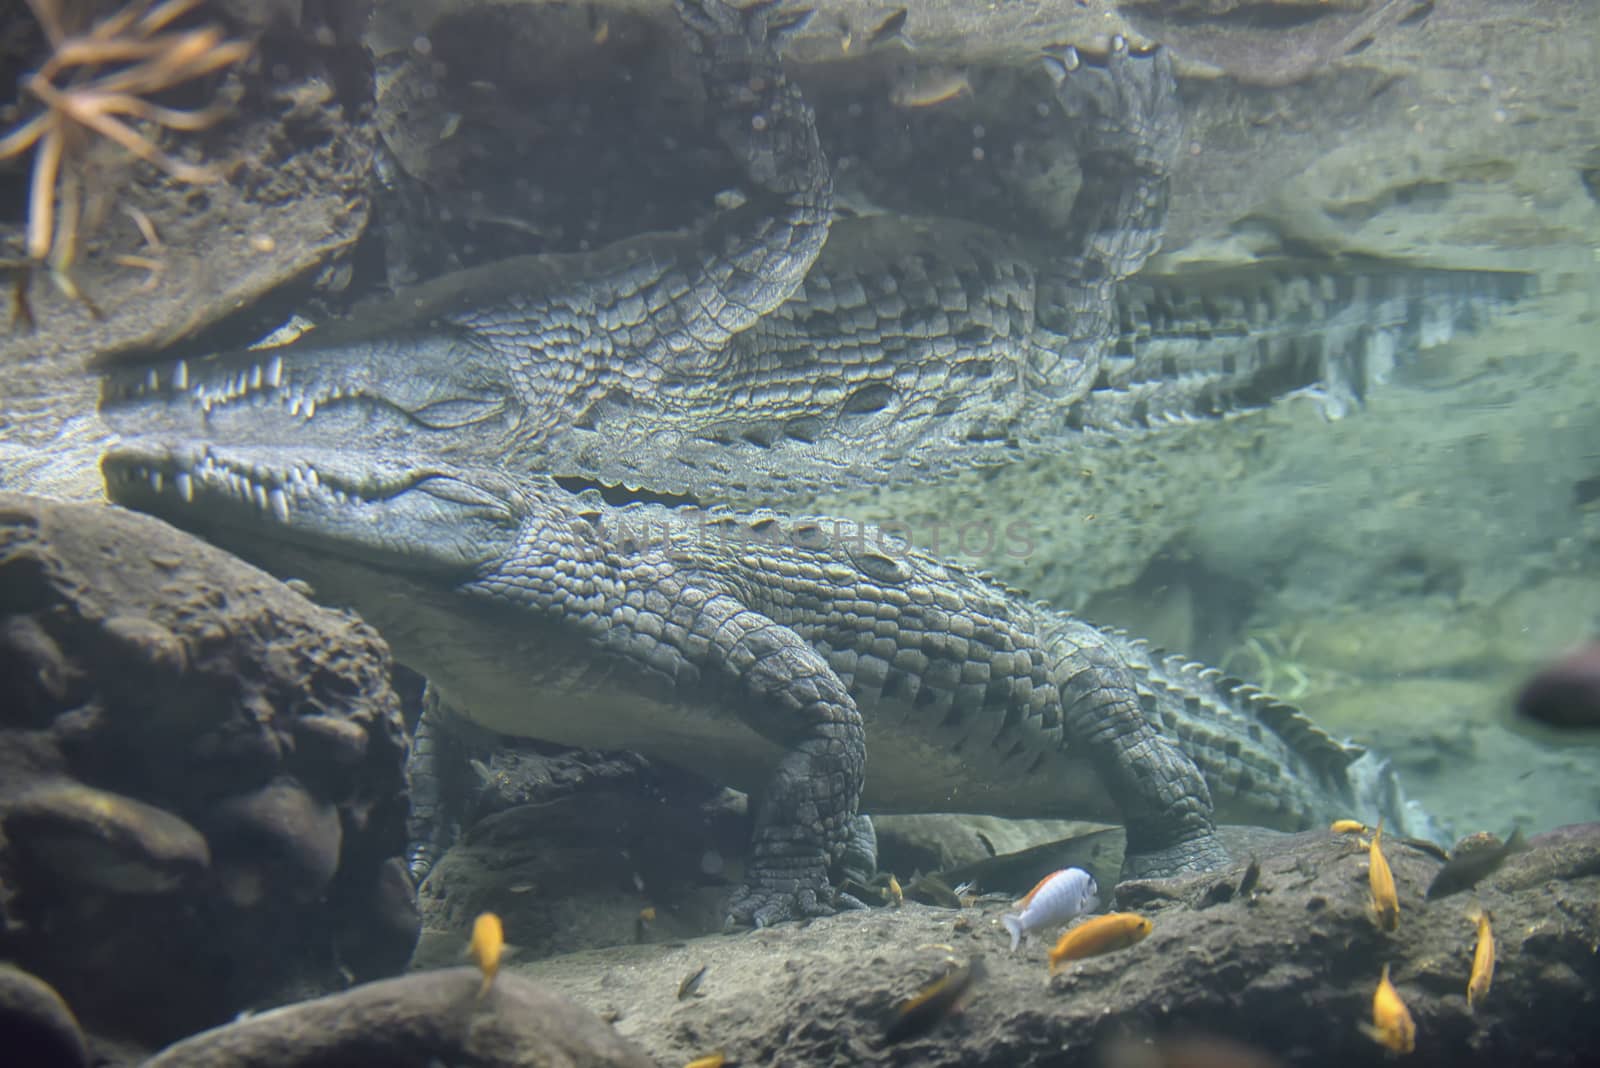 Crocodile swimming in water  by jordachelr